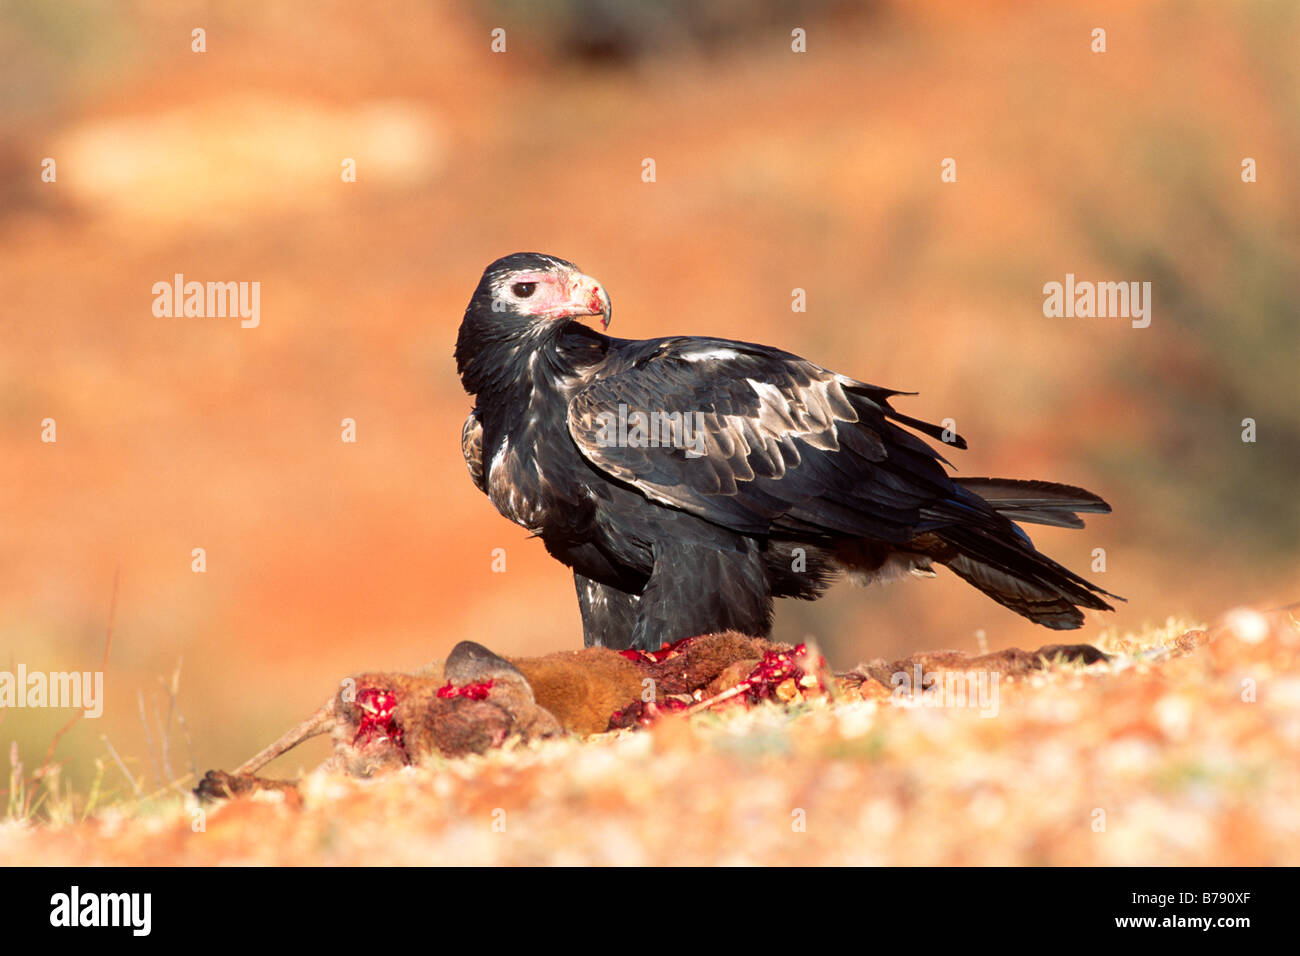 Aigle australien, eaglehawk (Aquila audax) sur ses proies, le sud de l'Australie, l'Australie Banque D'Images